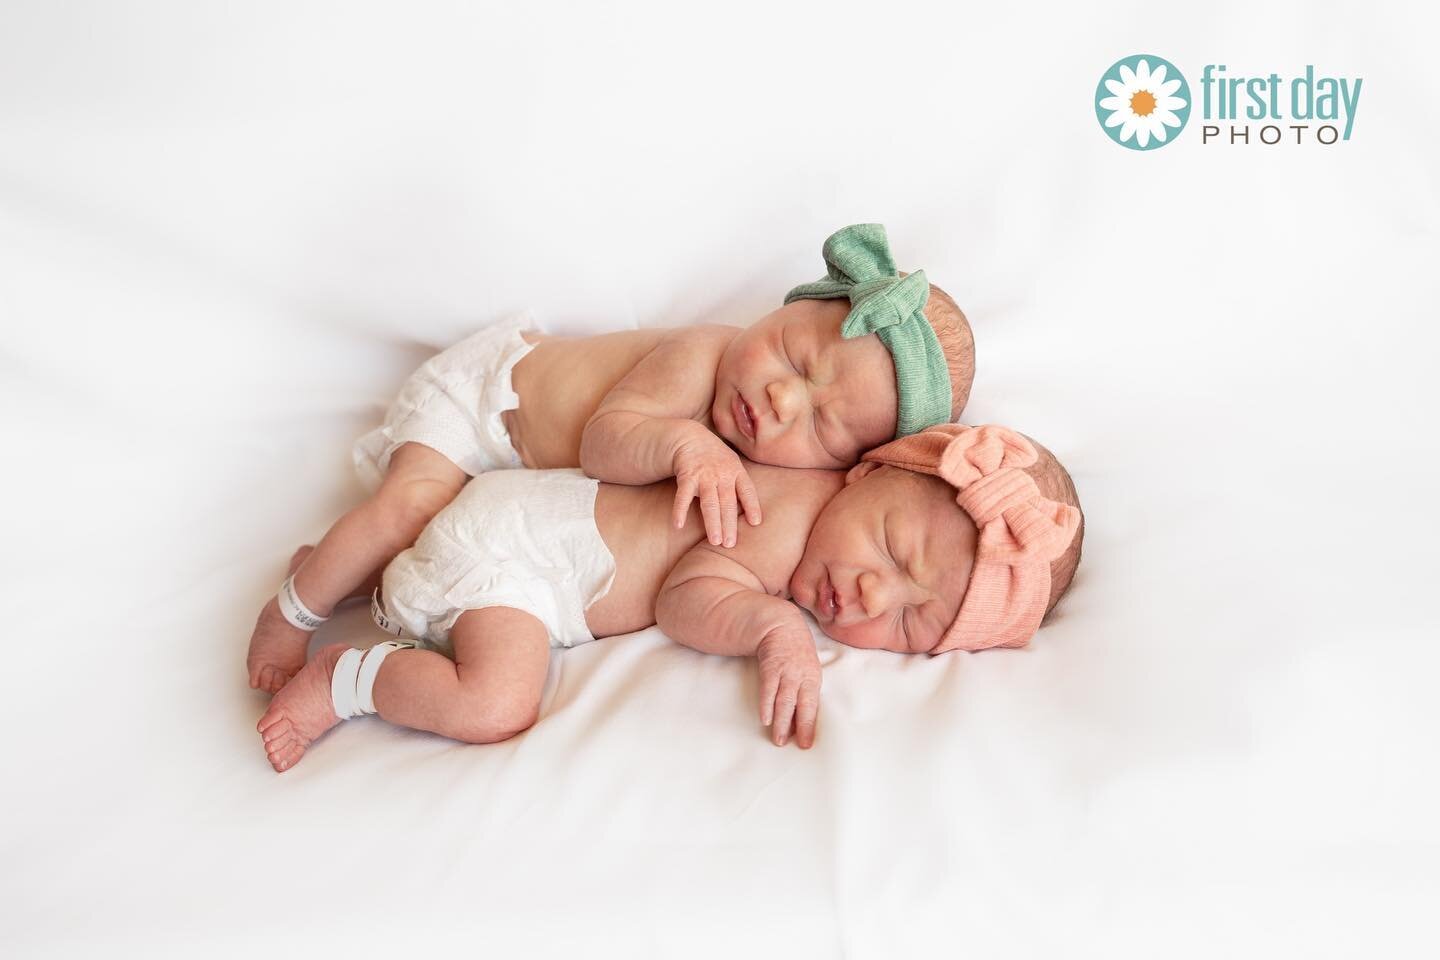 Sisters. 💕🎀💕🎀
#twins 
#firstdayphoto
www.firstdayphoto.com
.
.
.
.
.
#fresh48 #first48 #firstdayphotonewborns #newbornphotography #newbornphotographer #babyphoto #babyphotos #babyphotography #babies #cutebaby #babiesofinstagram #bundleofjoy #twin